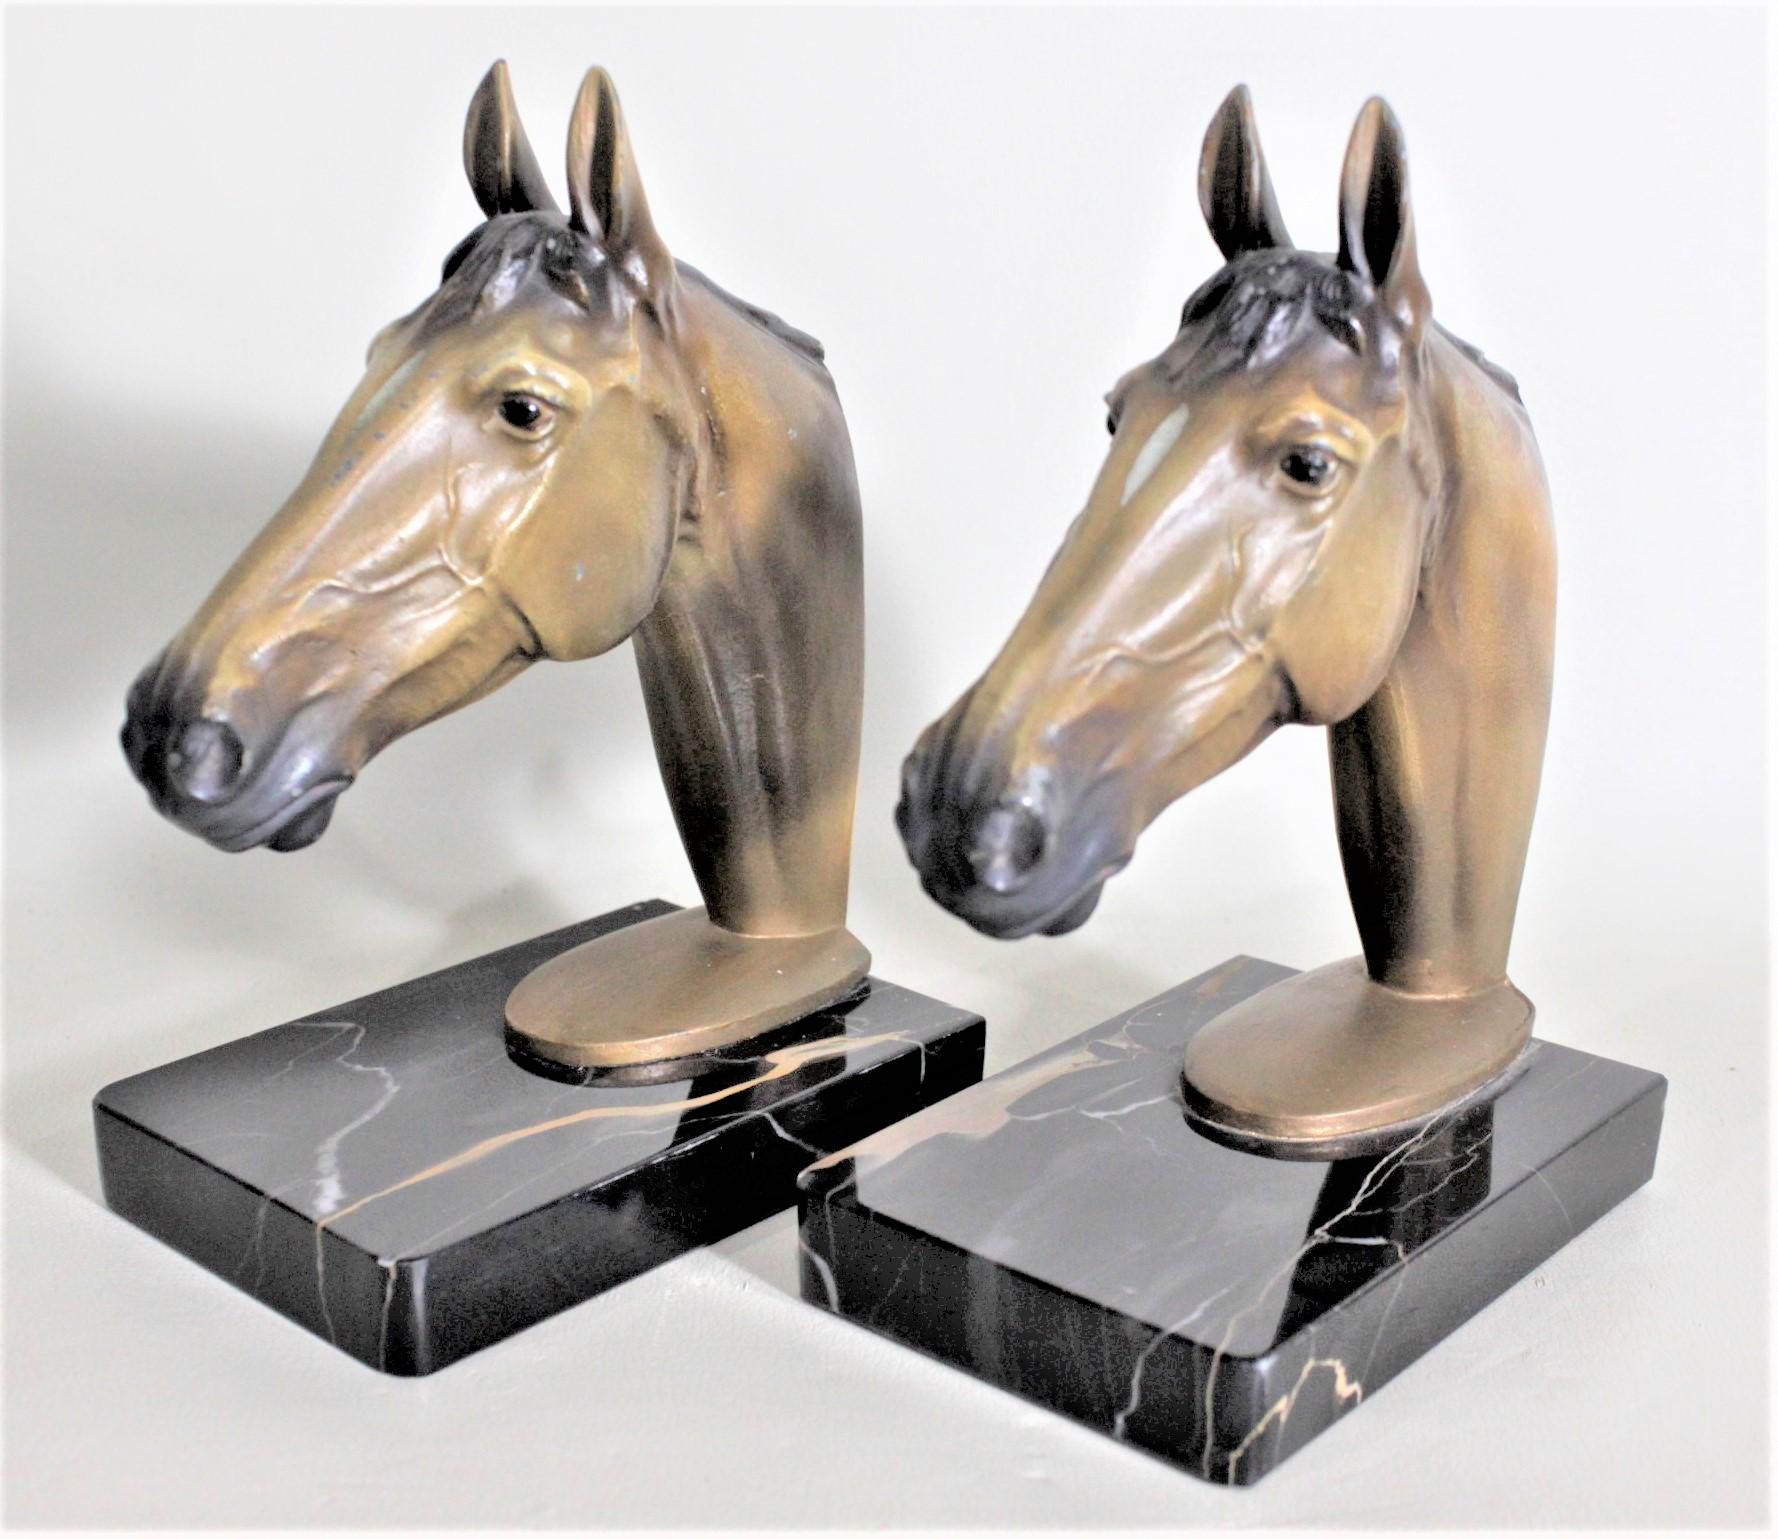 Dieses Paar gegossener und kalt bemalter skulpturaler Pferdekopf-Buchstützen ist unsigniert, wurde aber vermutlich um 1960 in England in einem realistischen Stil hergestellt. Die gut ausgeführten gegossenen und bemalten Buchstützen sind auf